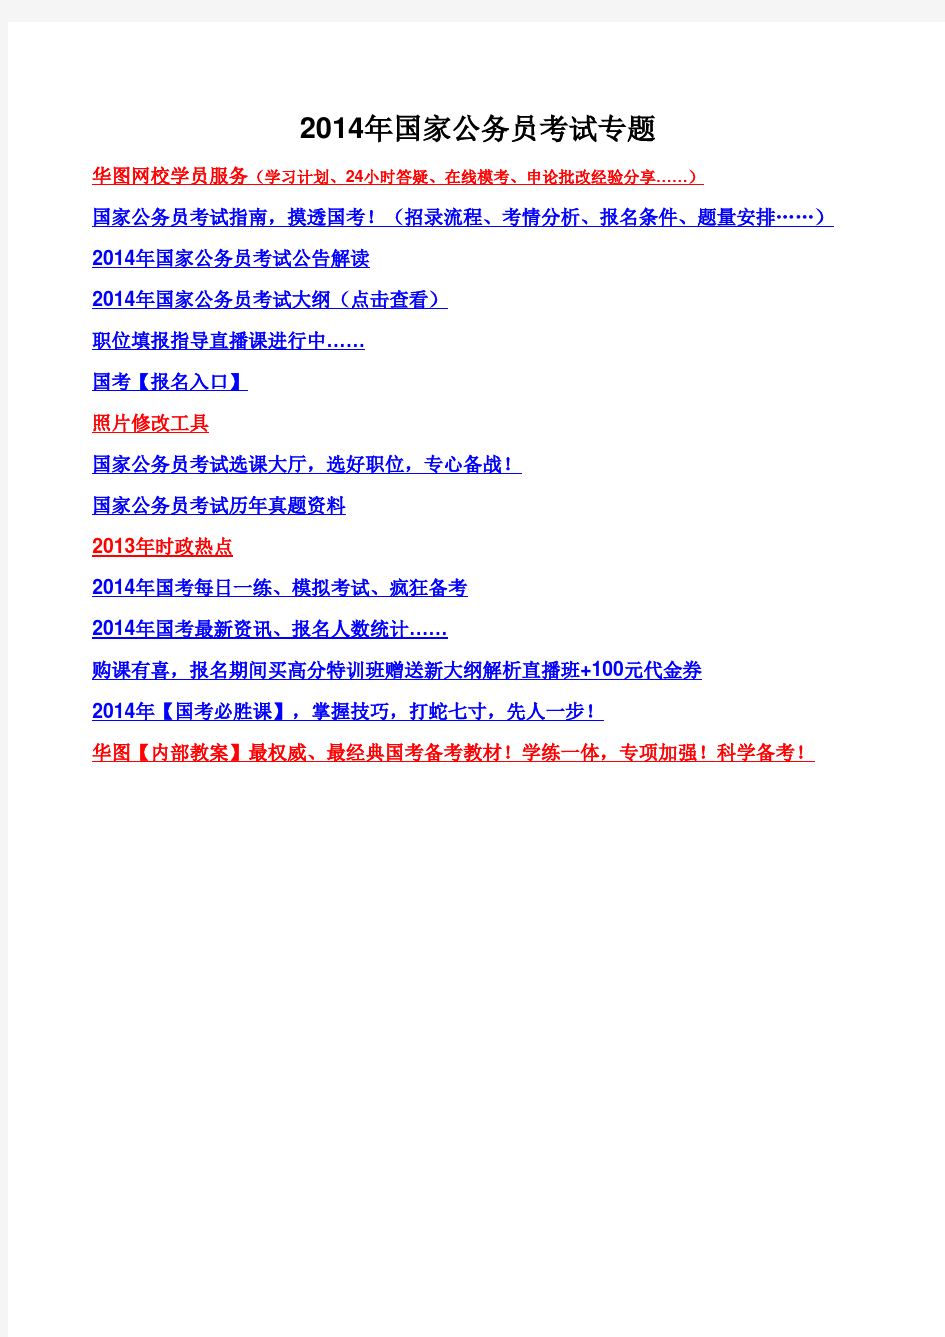 2014年江苏国家公务员考试职位表